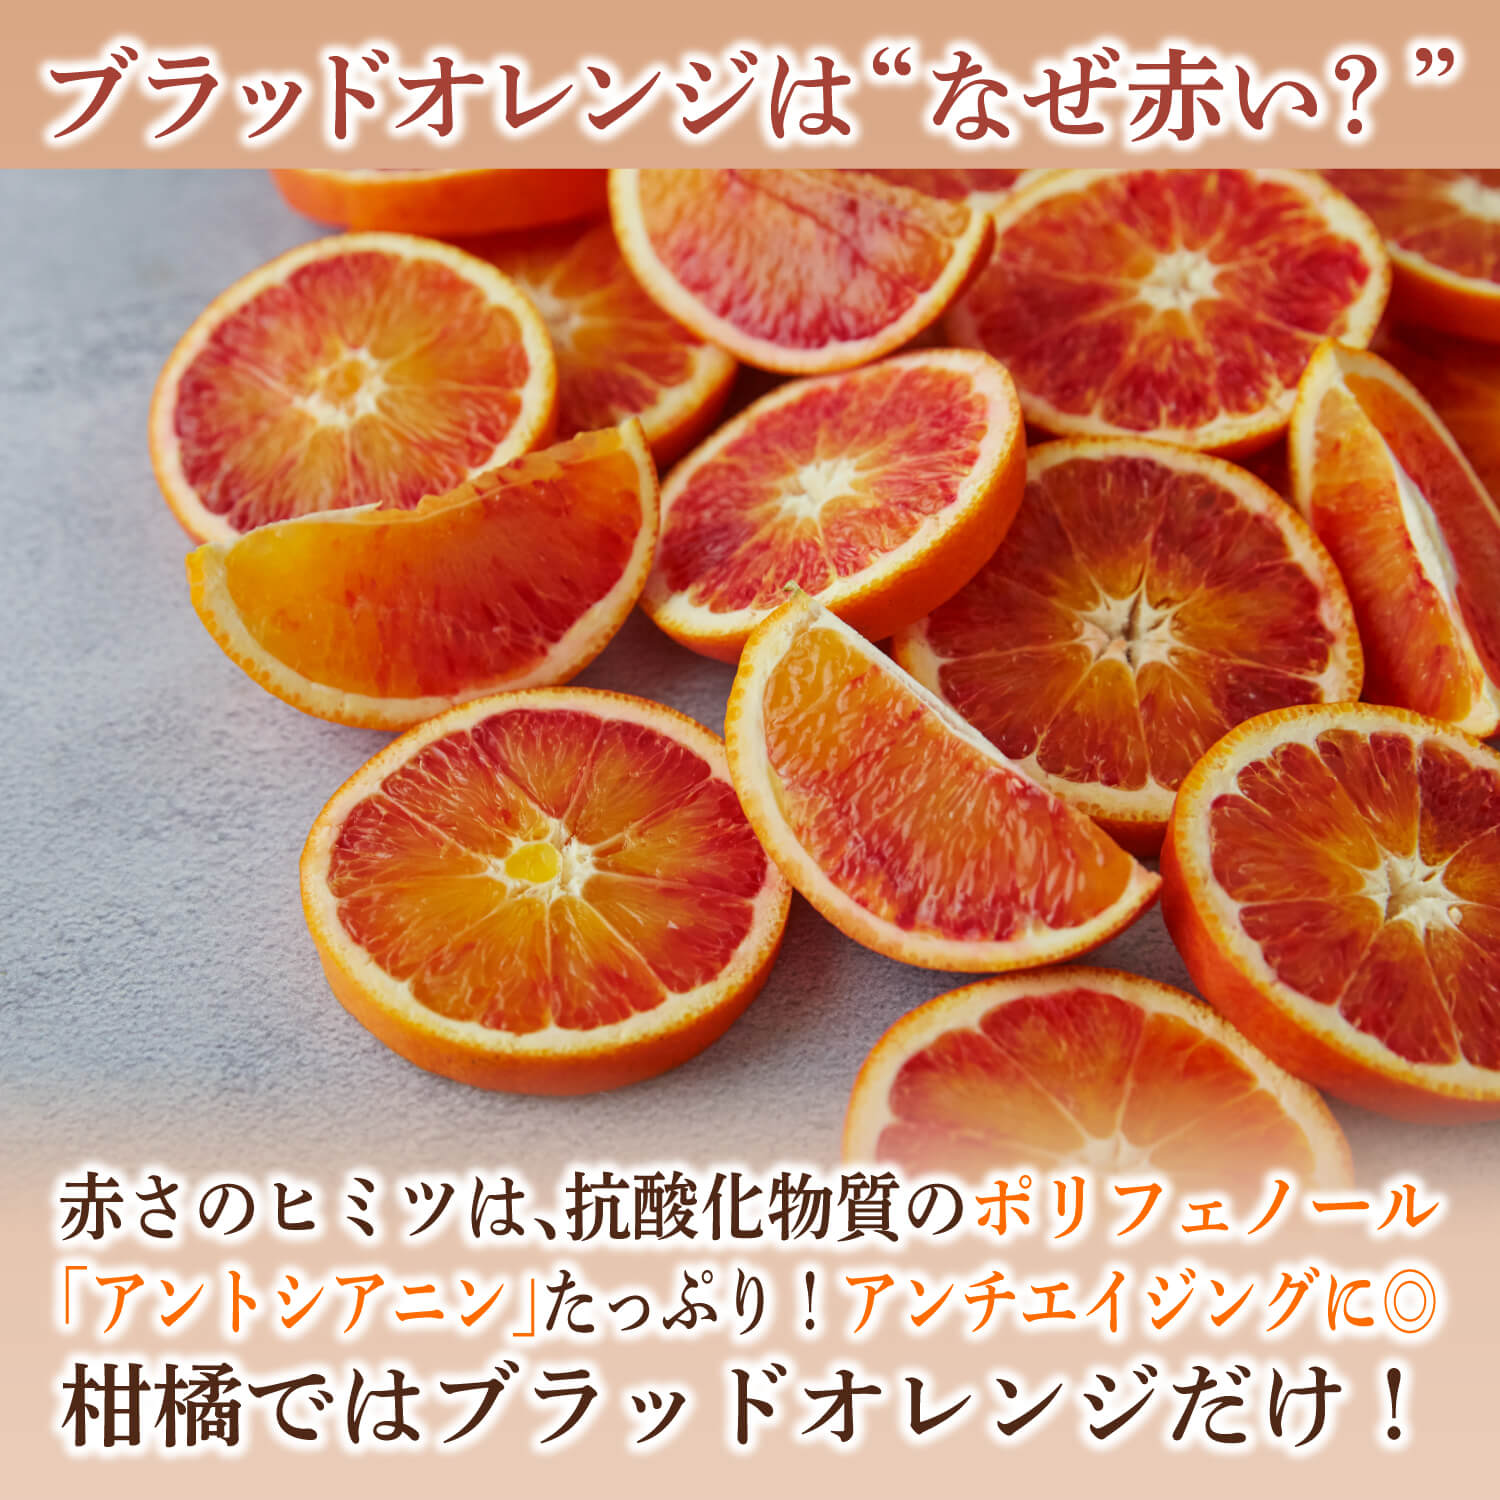 ひとくちブラッドオレンジタロッコフルーツチョコレートバレンタイン人気通販オランジェットオレンジピール